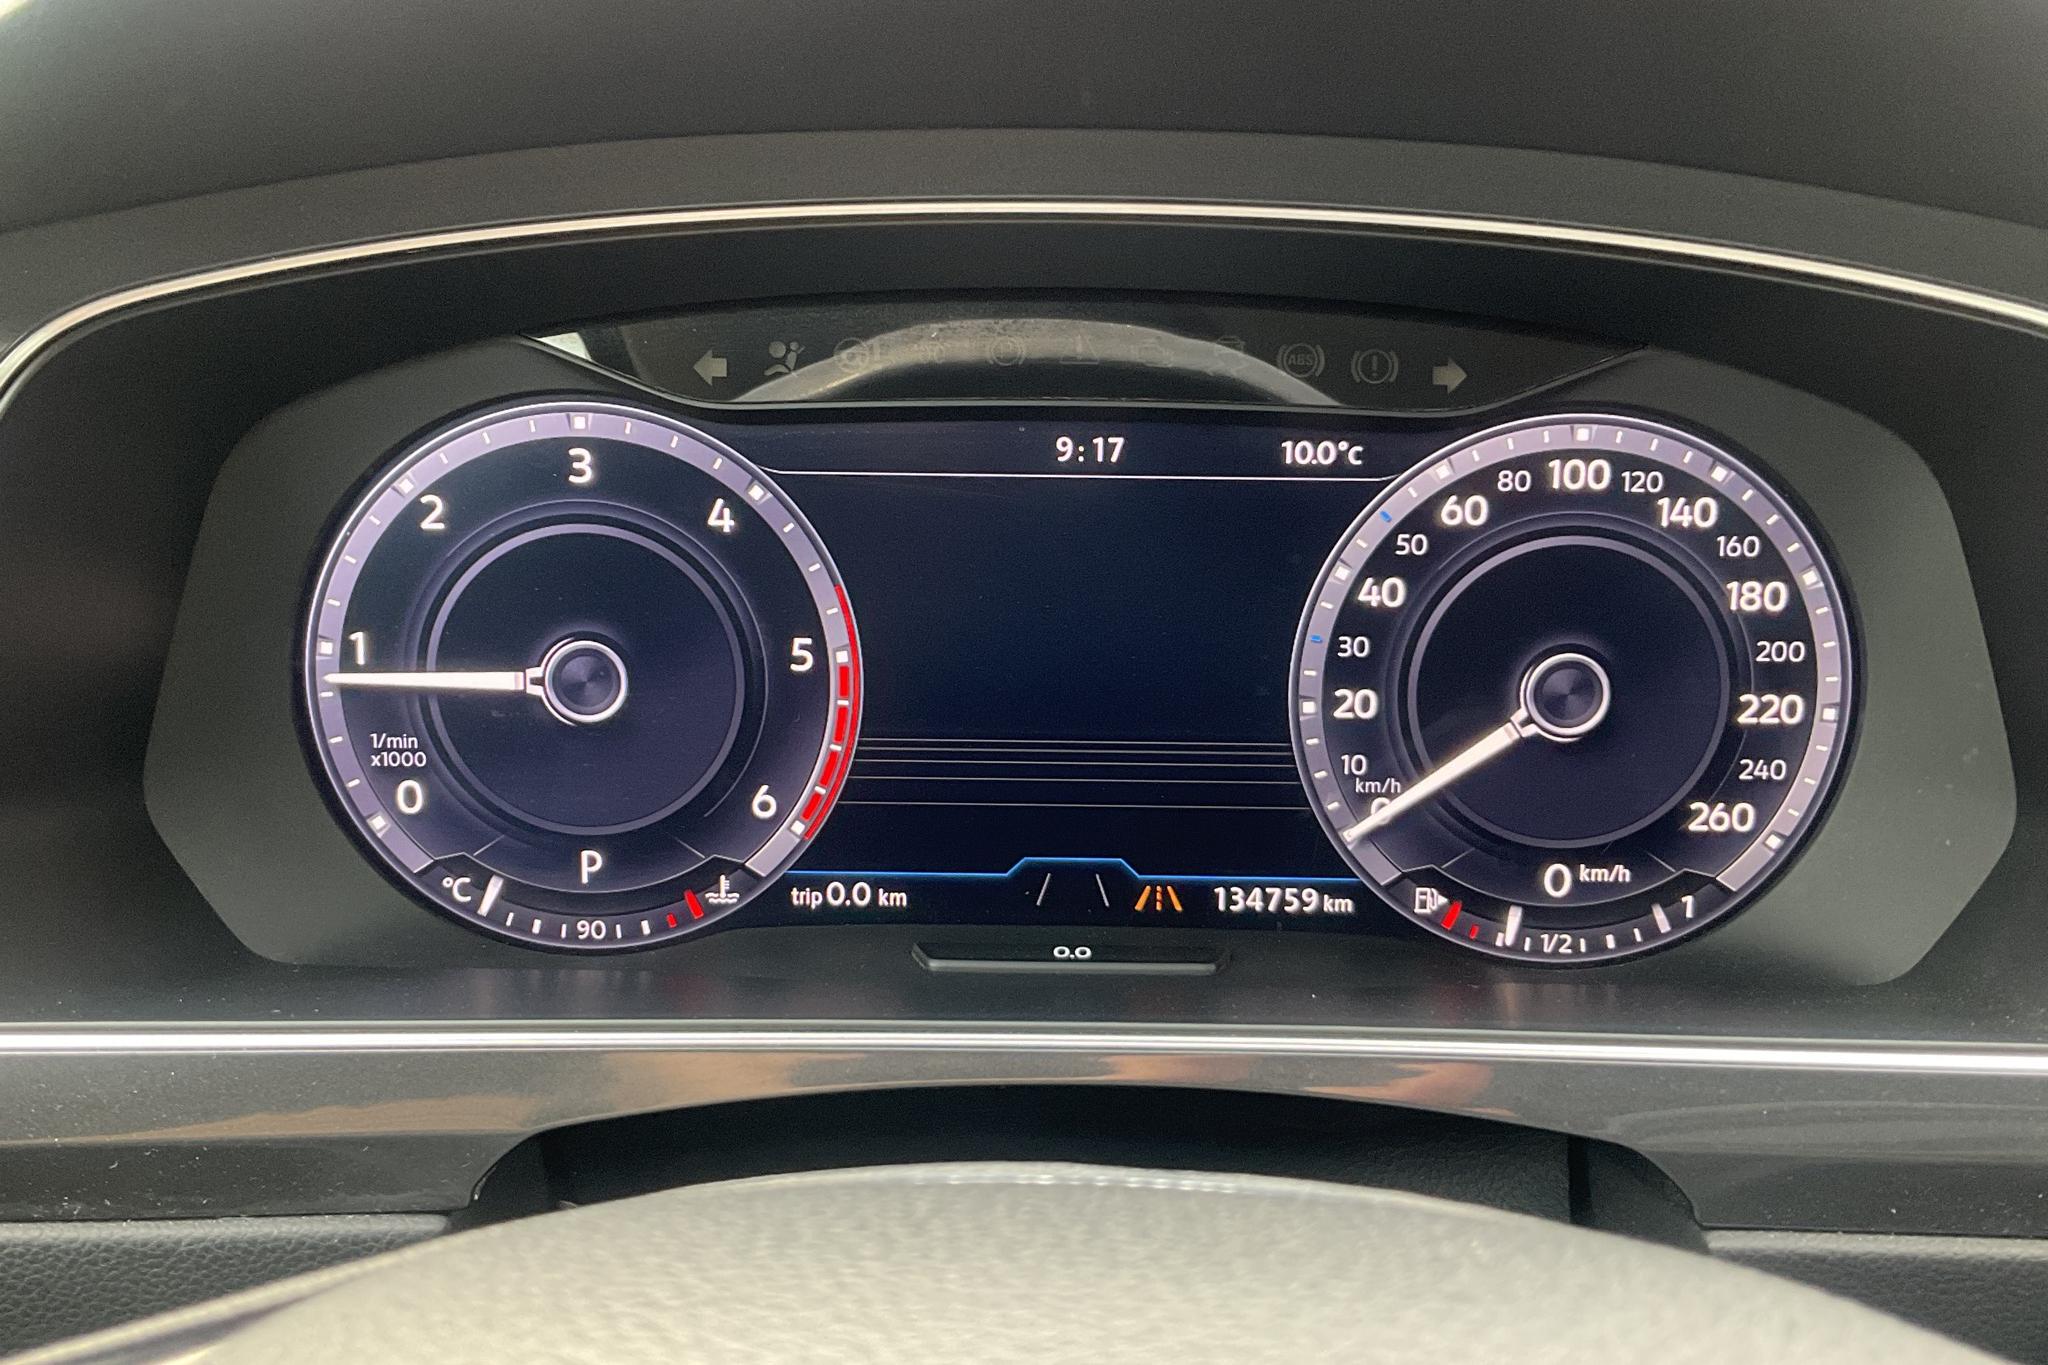 VW Tiguan 2.0 TDI 4MOTION (190hk) - 134 760 km - Automatic - black - 2017